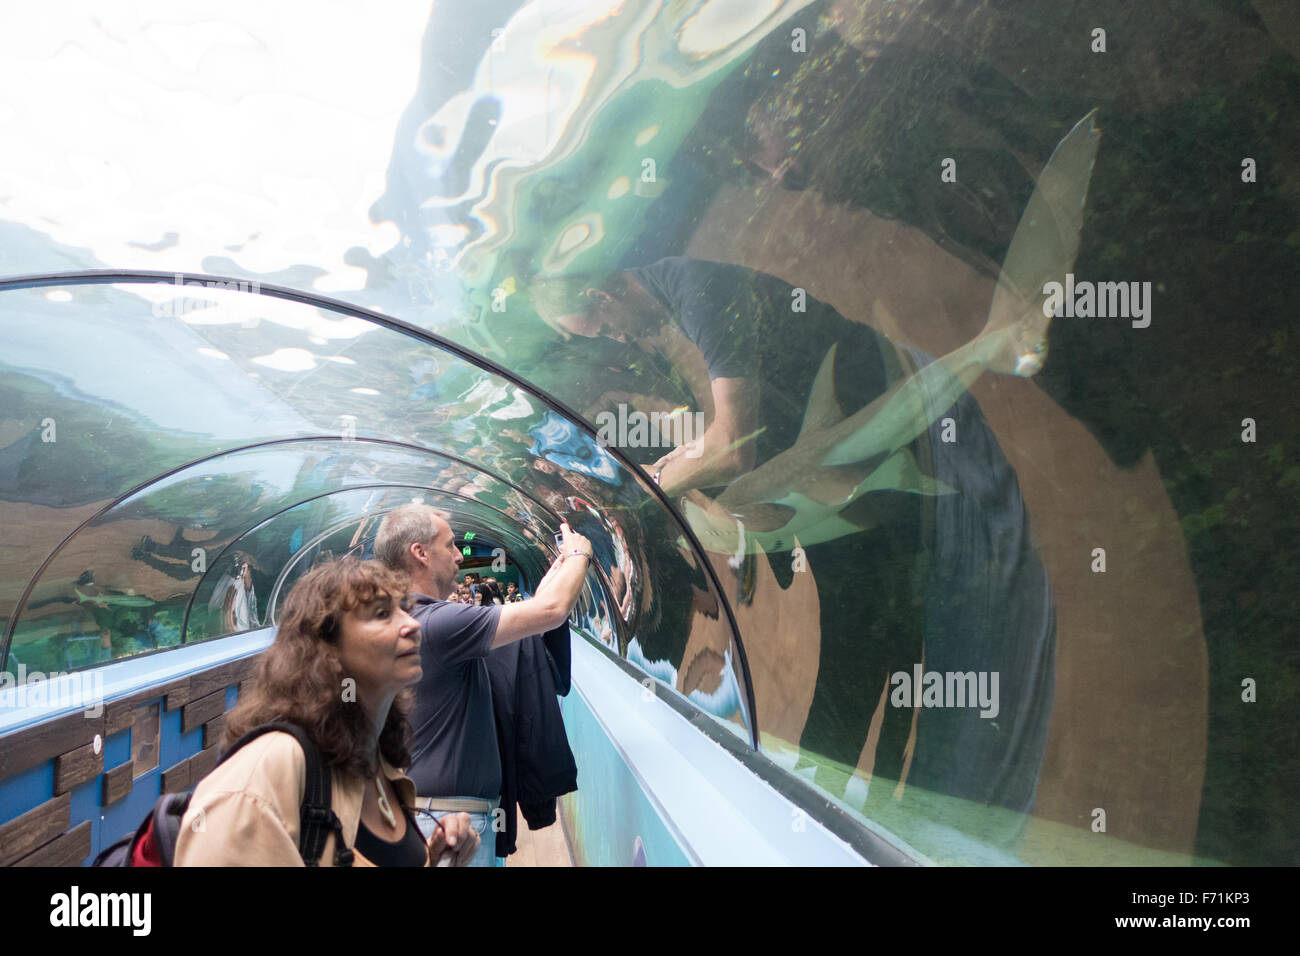 people taking picture inside aquarium Stock Photo